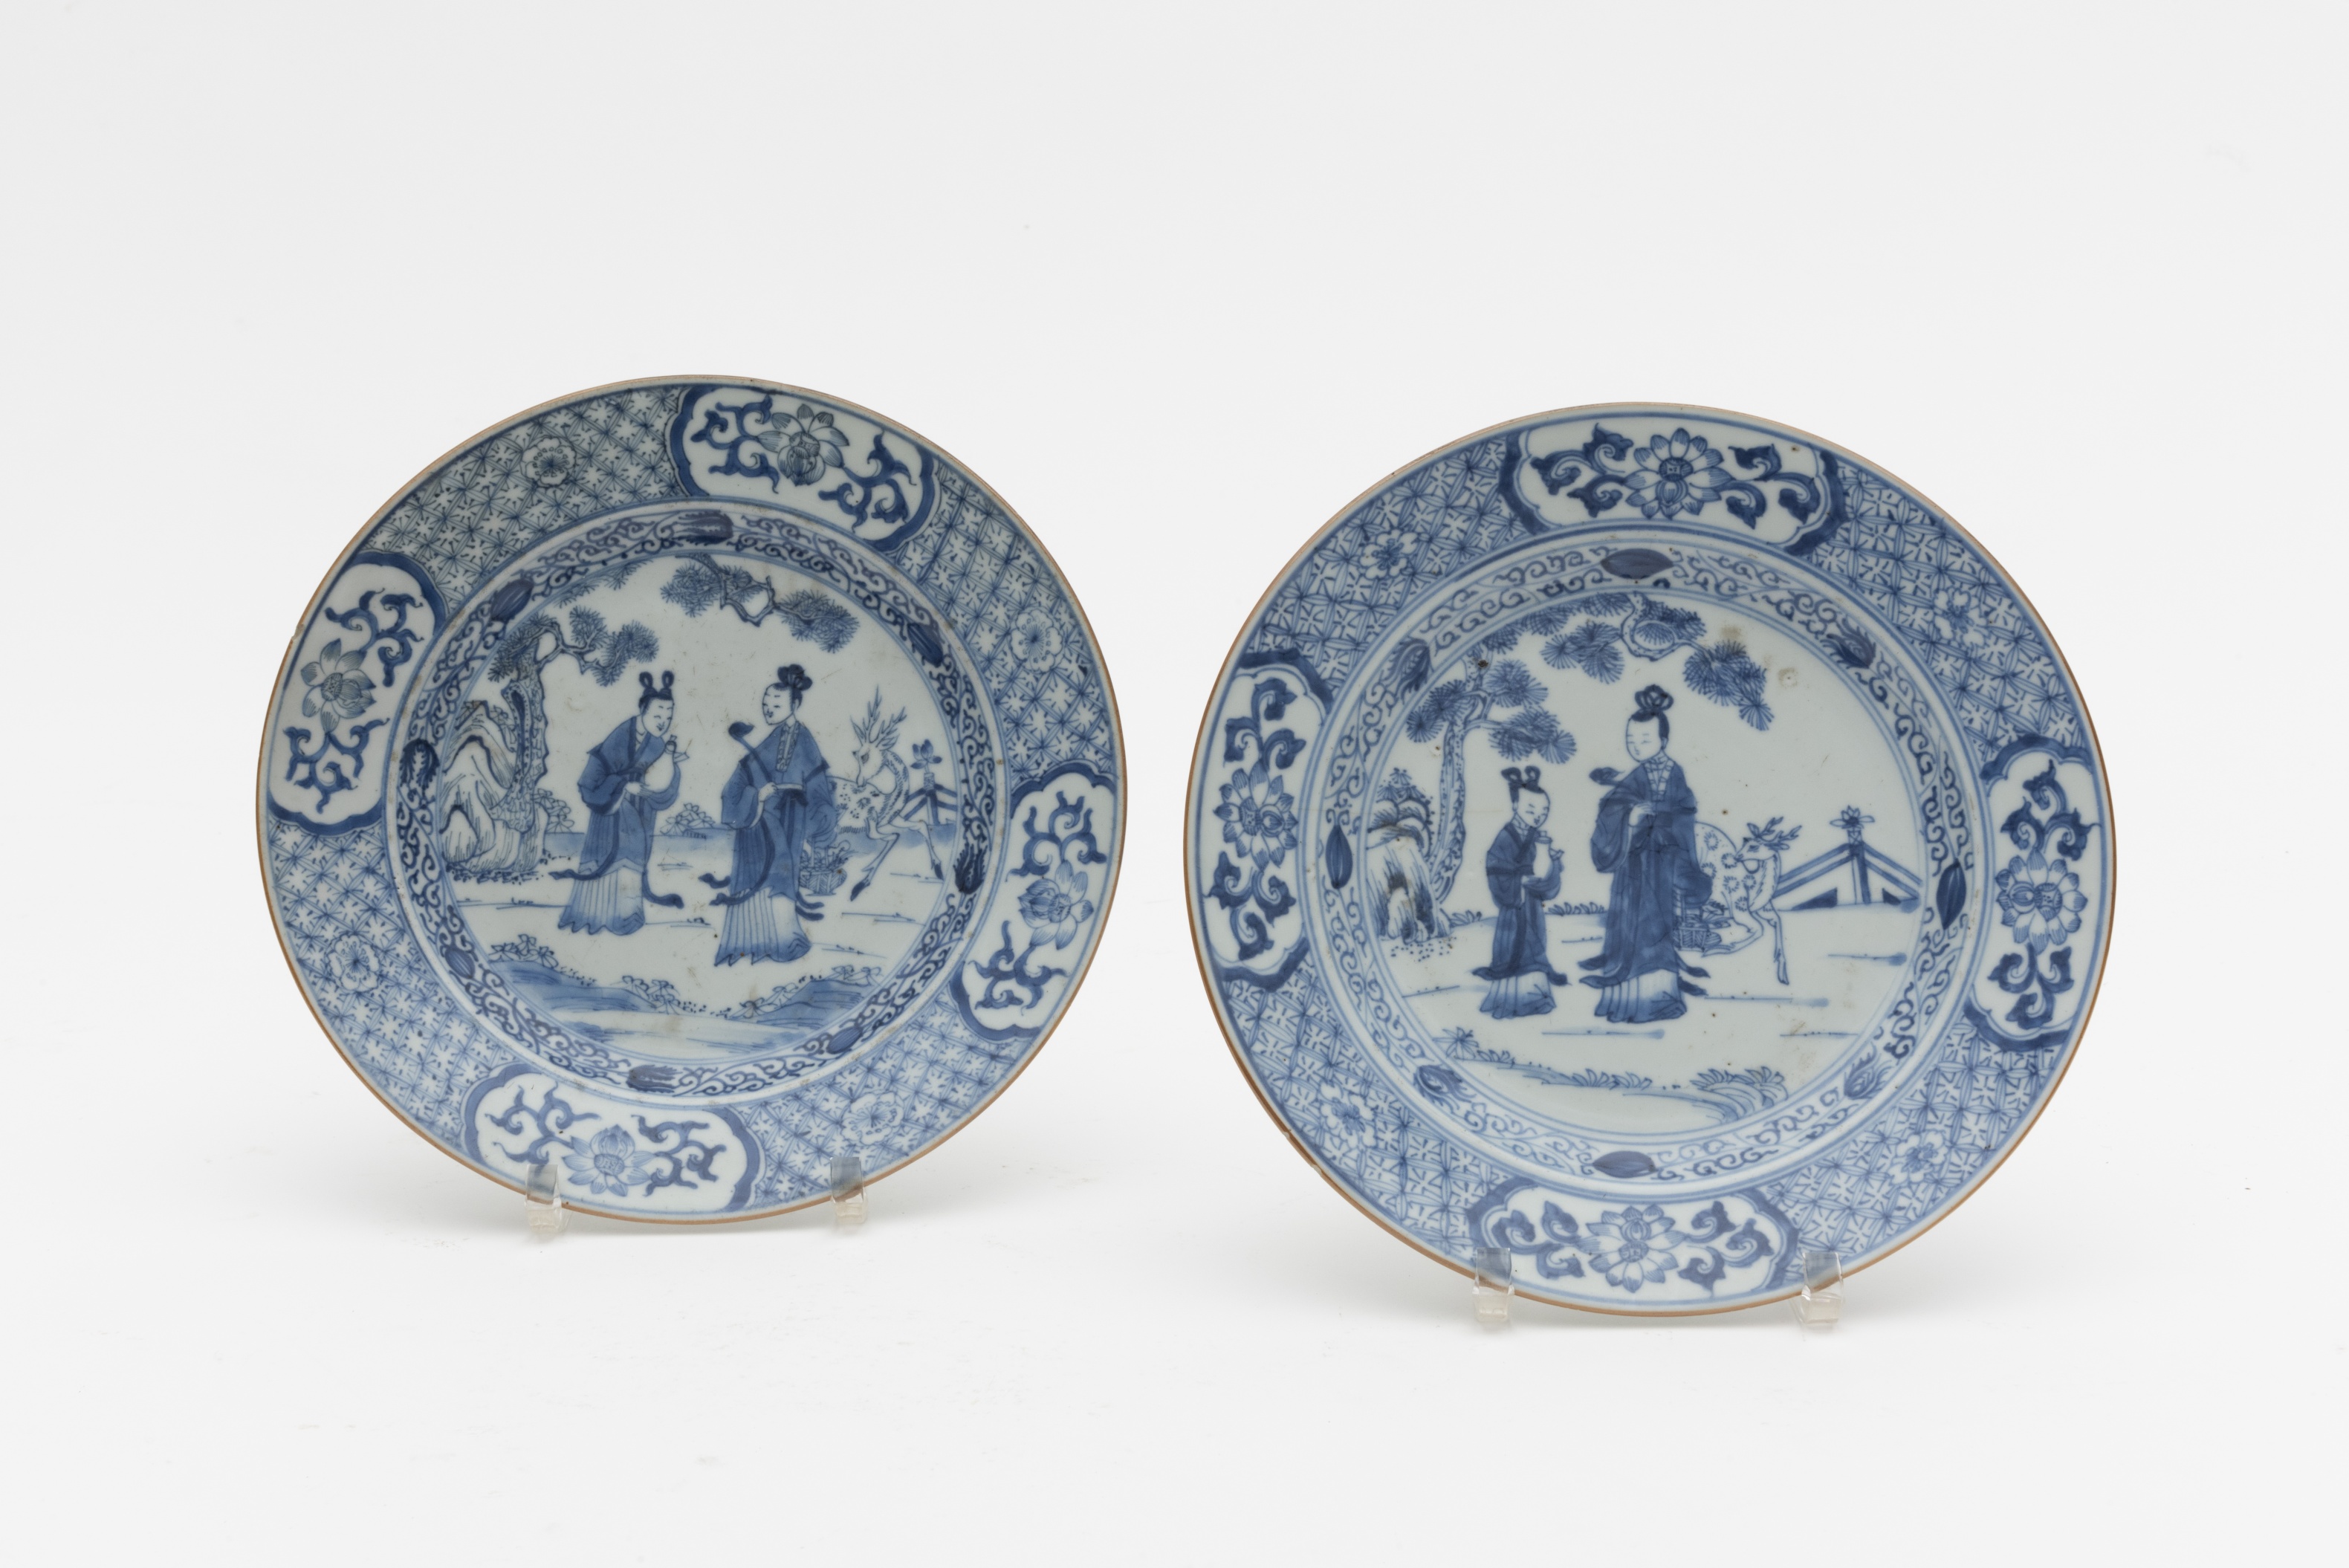 CHINE. Paire d'assiettes en porcelaine bleue et blanche peintes, vers 1740